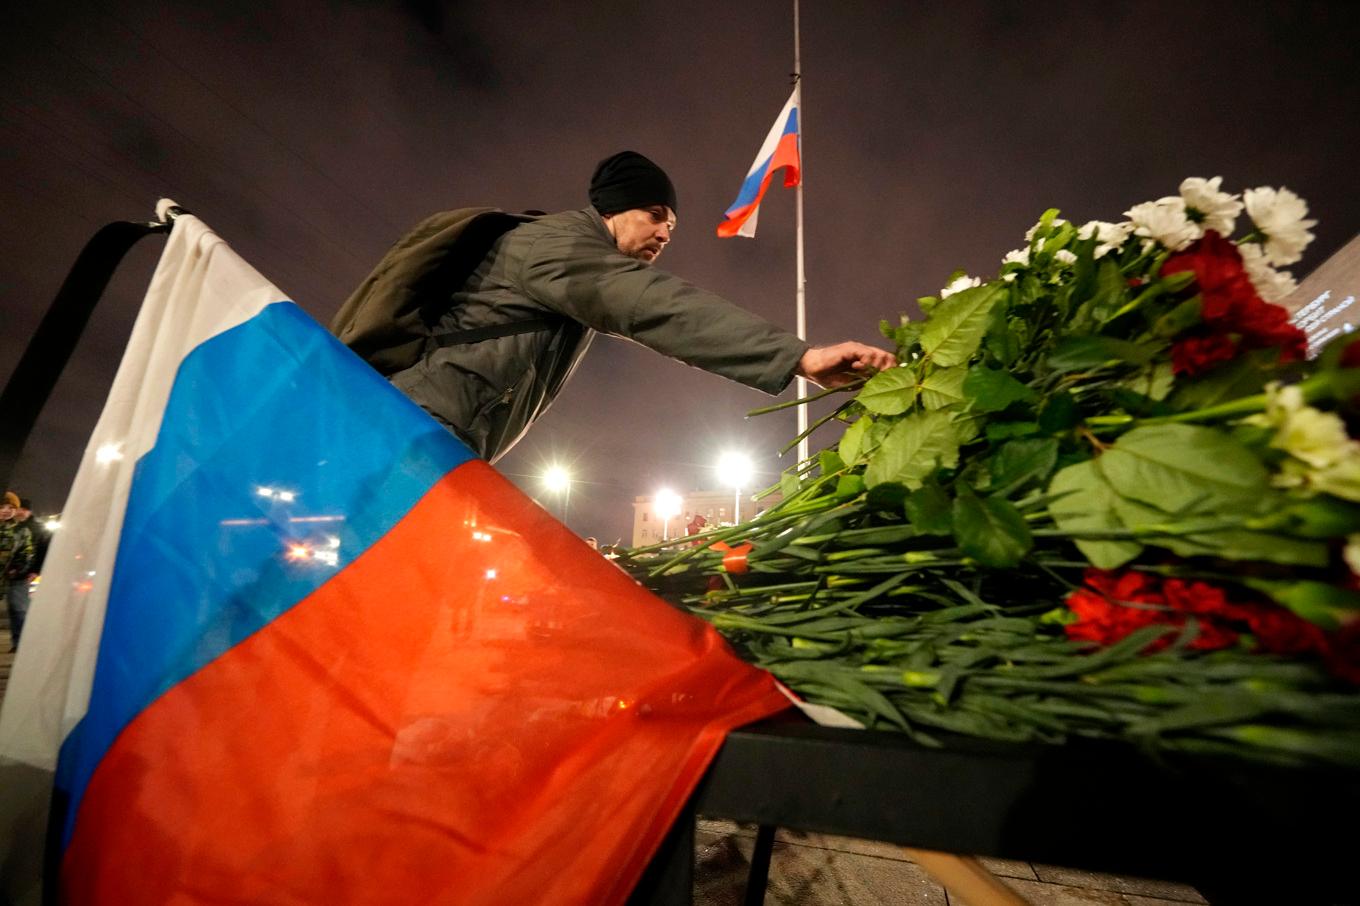 En man lämnar en blomma vid den minnesplats som spontant växt fram utanför konsertlokalen där minst 130 personer miste livet i en attack på fredagskvällen. Foto: Dmitri Lovetsky/AP/TT